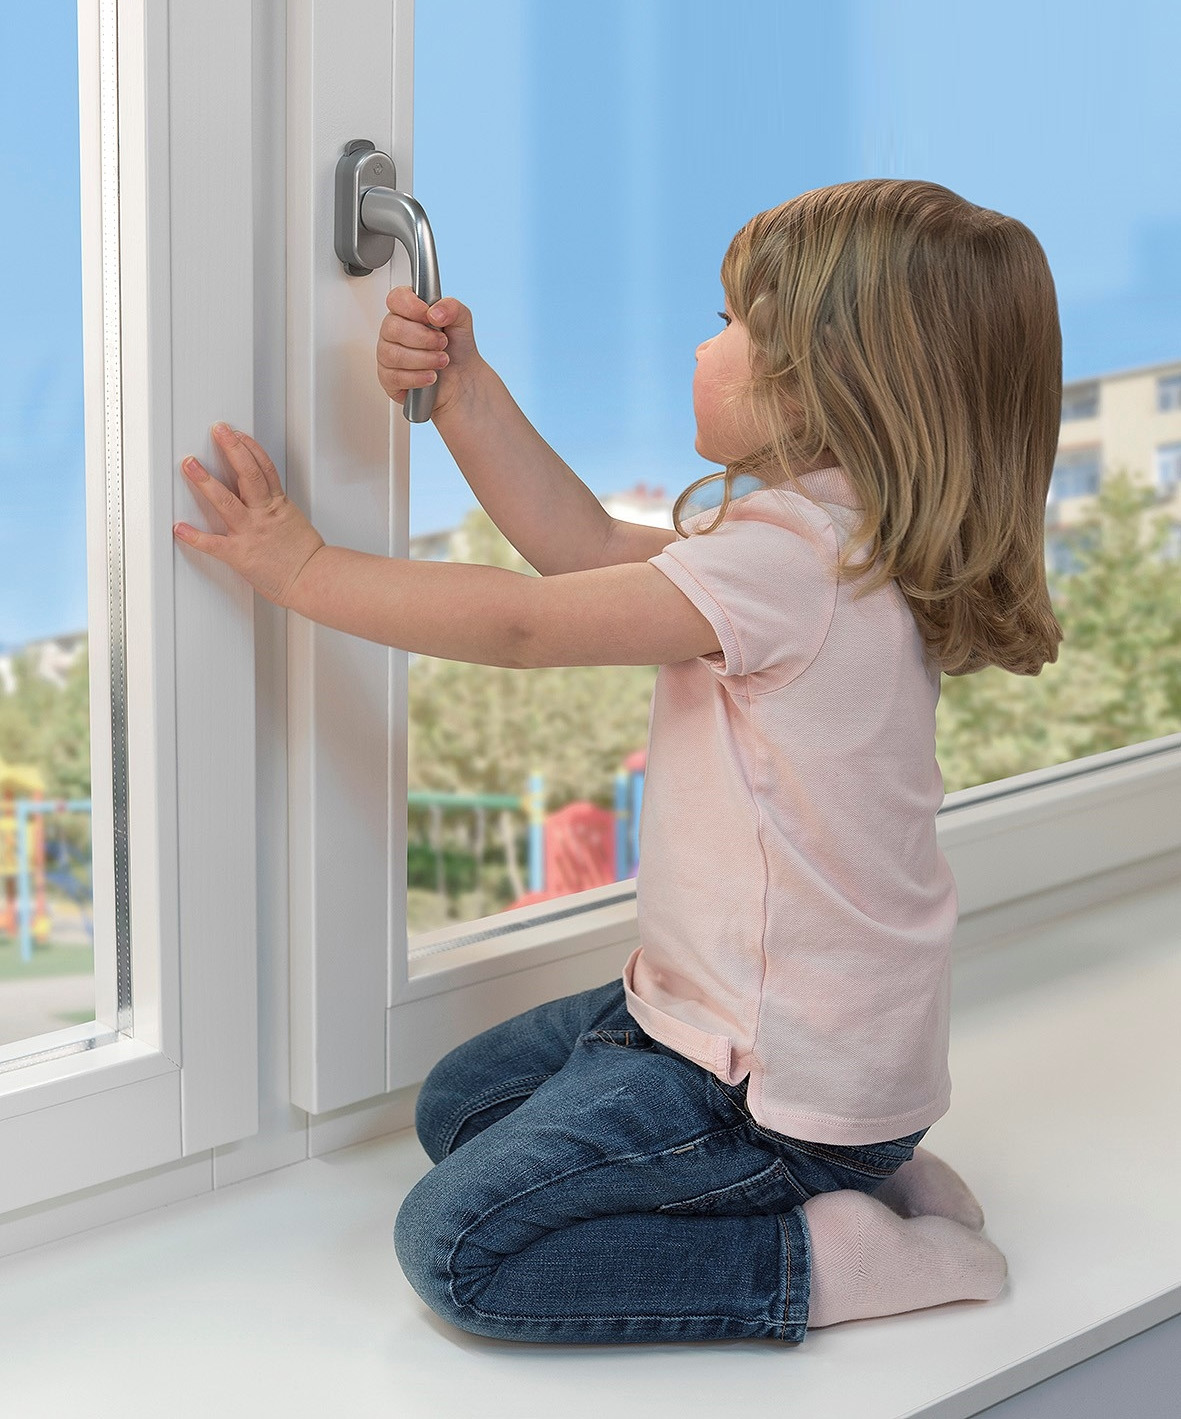 Открытые окна несут опасность для детей